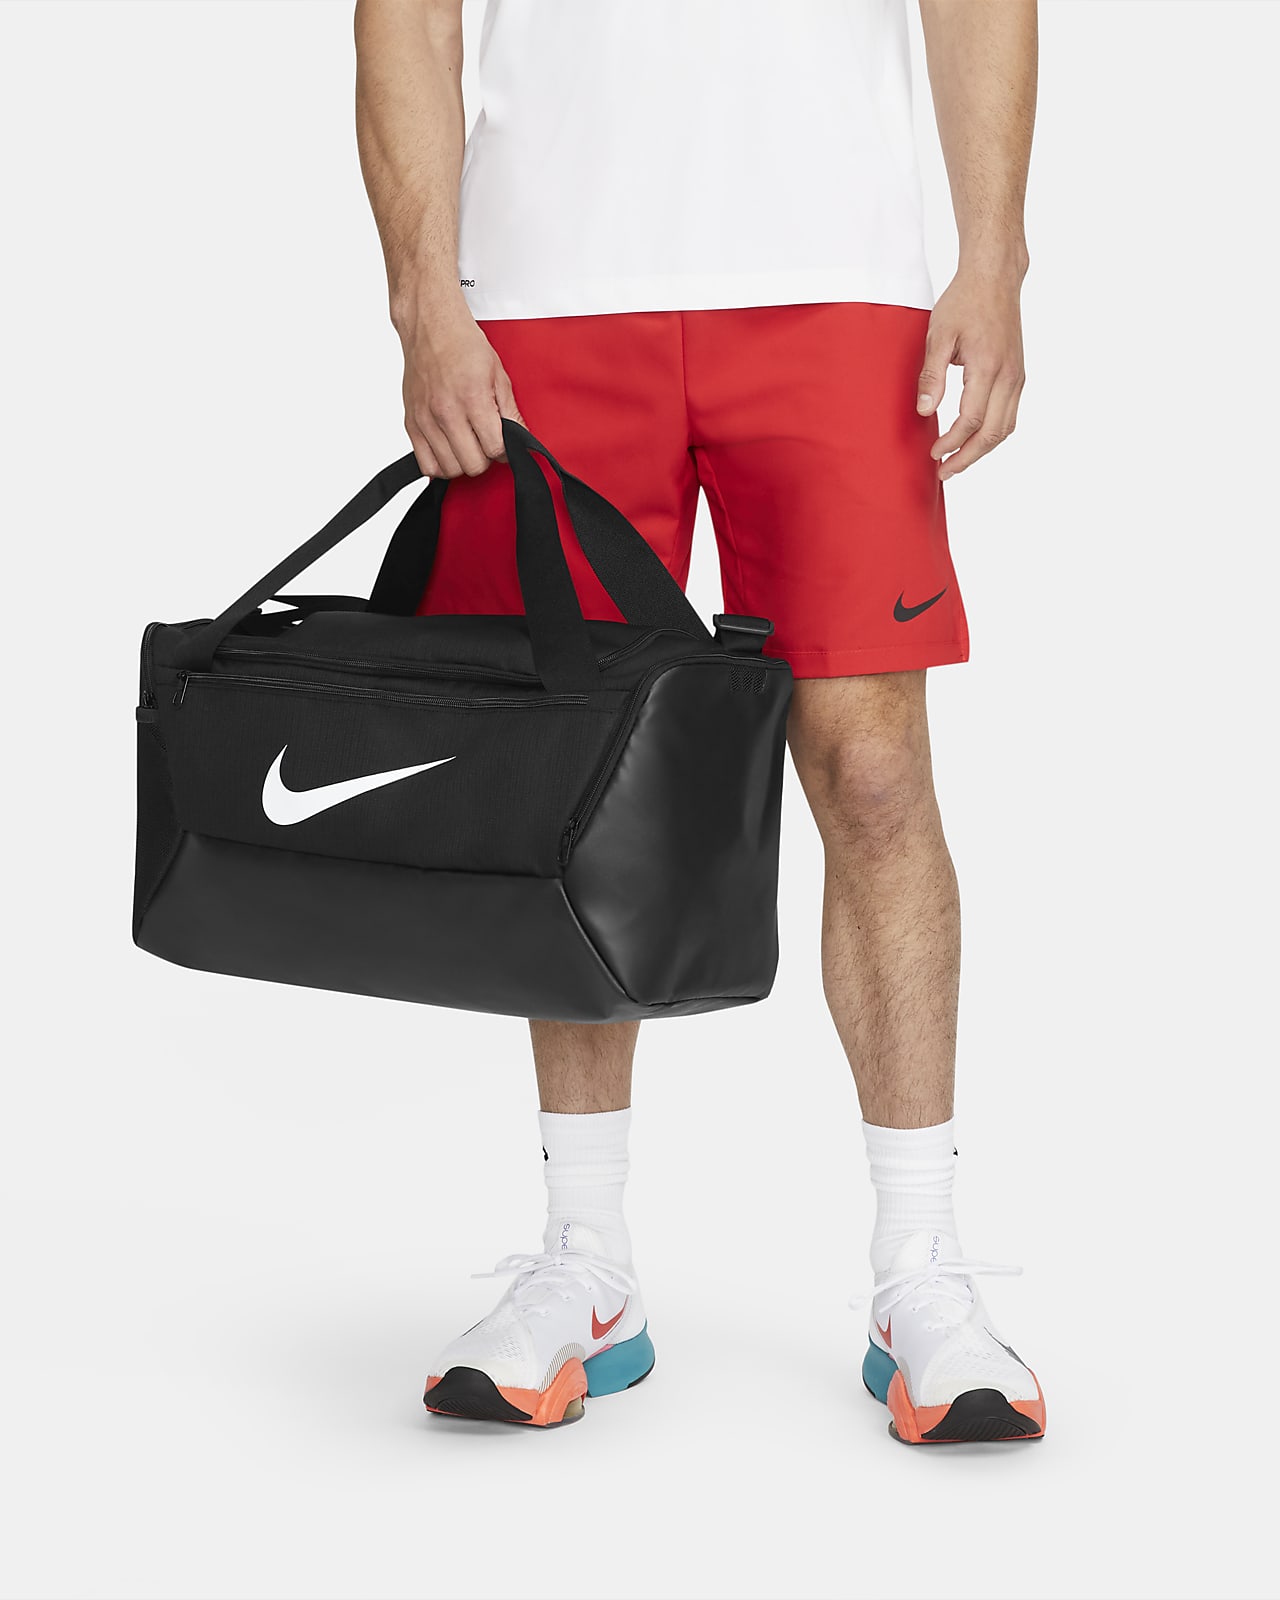 Torba treningowa Nike Brasilia 9.5 (rozmiar S, 41 l)